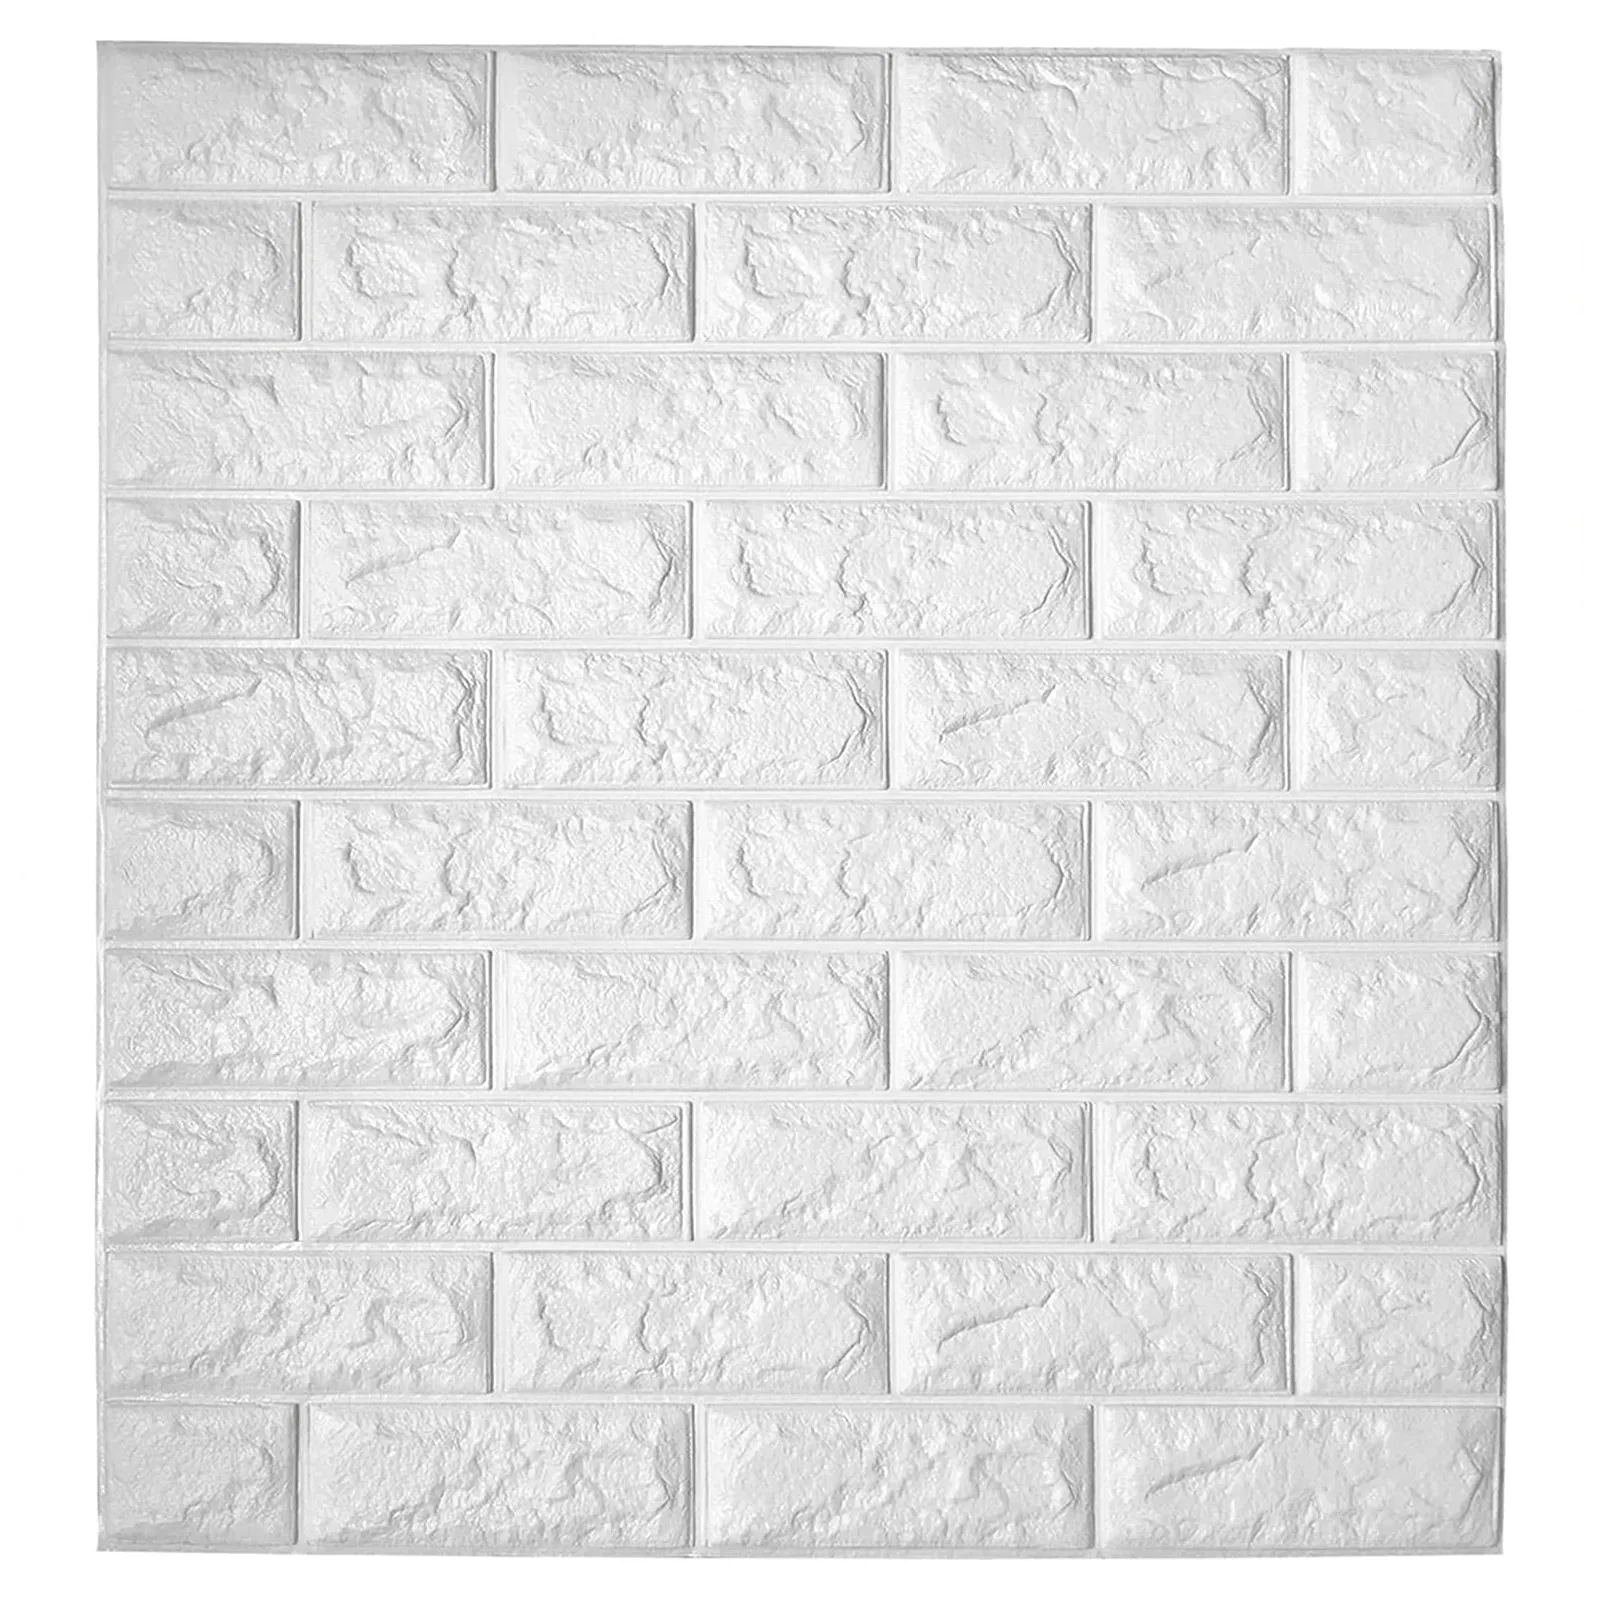 Art3d 11-pack soyma ve sopa iç duvar dekor için 3d duvar kağıdı panelleri kendinden yapışkanlı köpük tuğla duvar kağıtları A06003